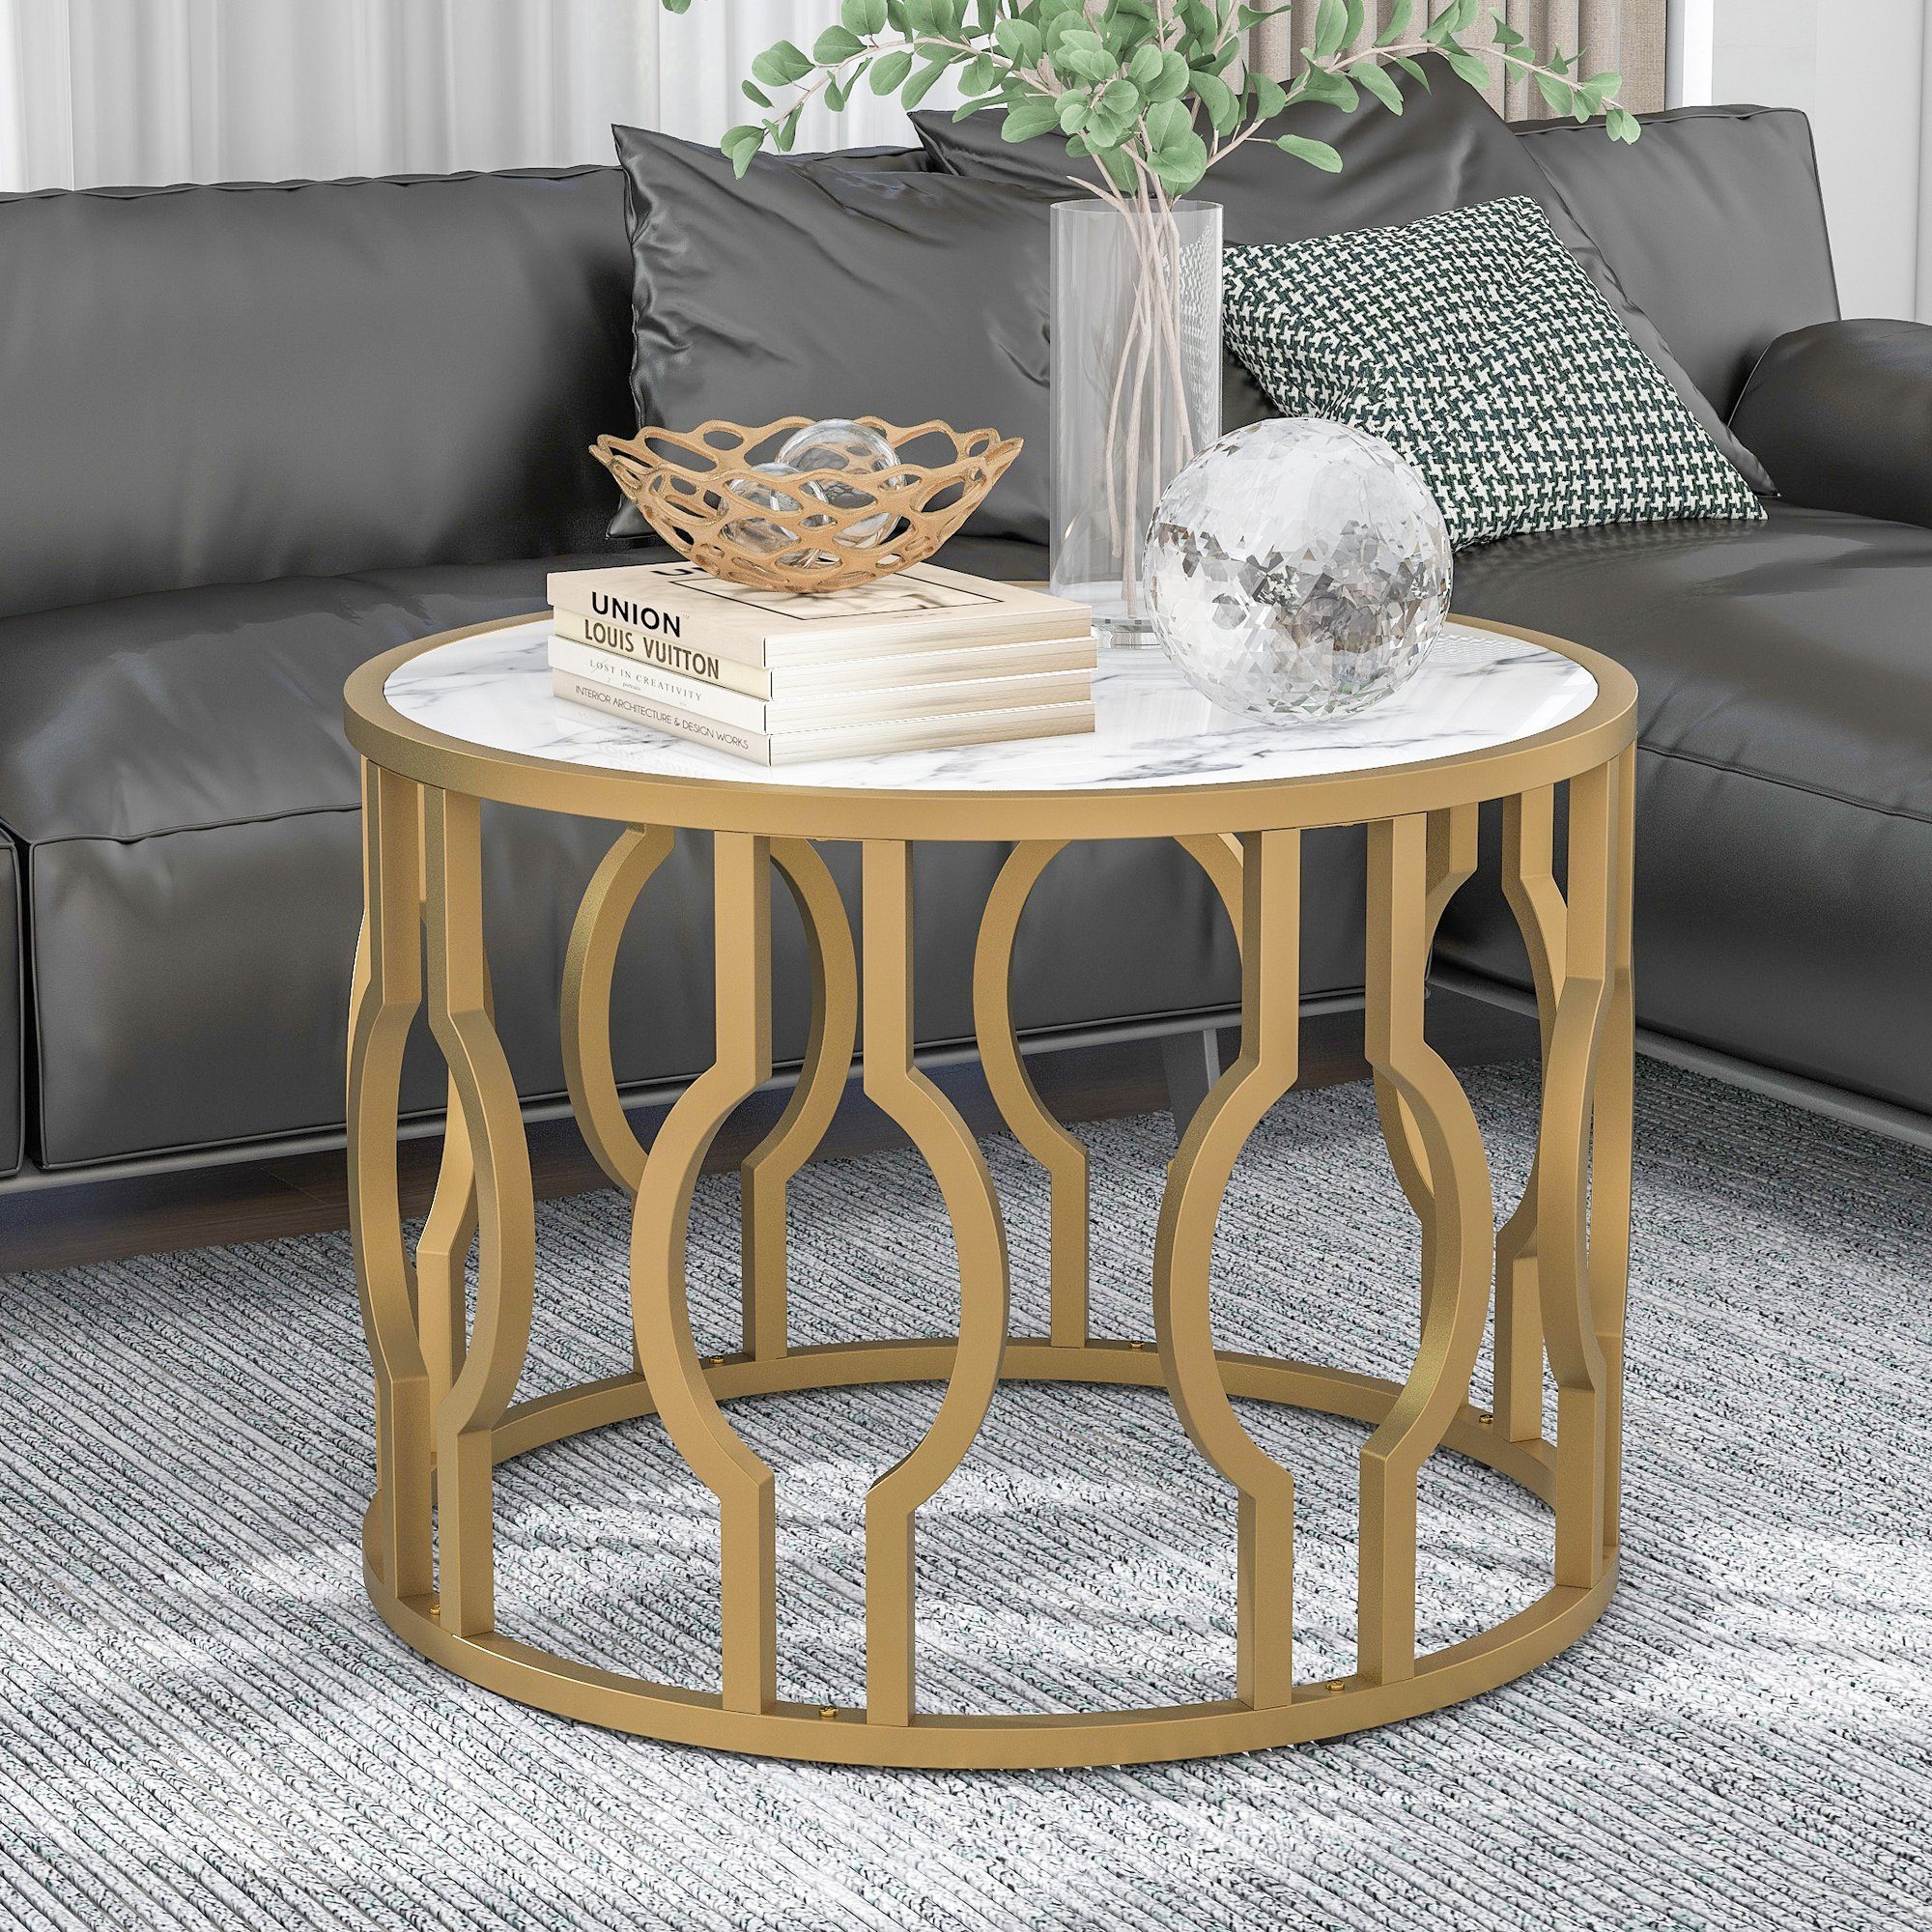 Celya Couchtisch Wohnzimmertisch mit goldfarbenem Tisch Sofatisch 70*46.5cm Stahlrahmen, Rund Wohnzimmer Beistelltisch